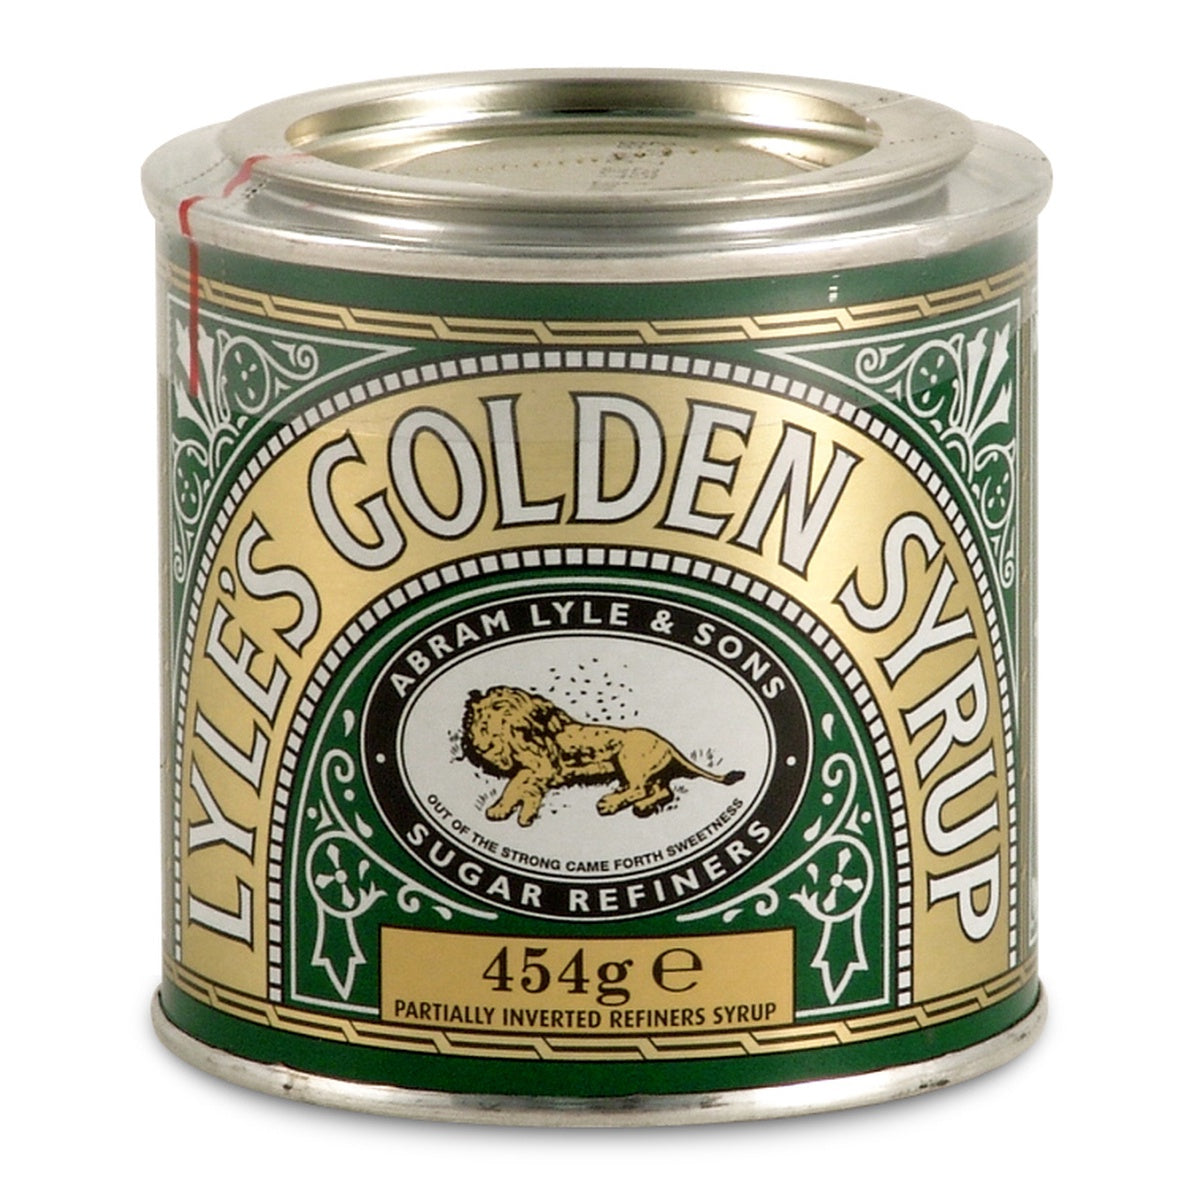 Tate & Lyle Golden Syrup Tin 16oz